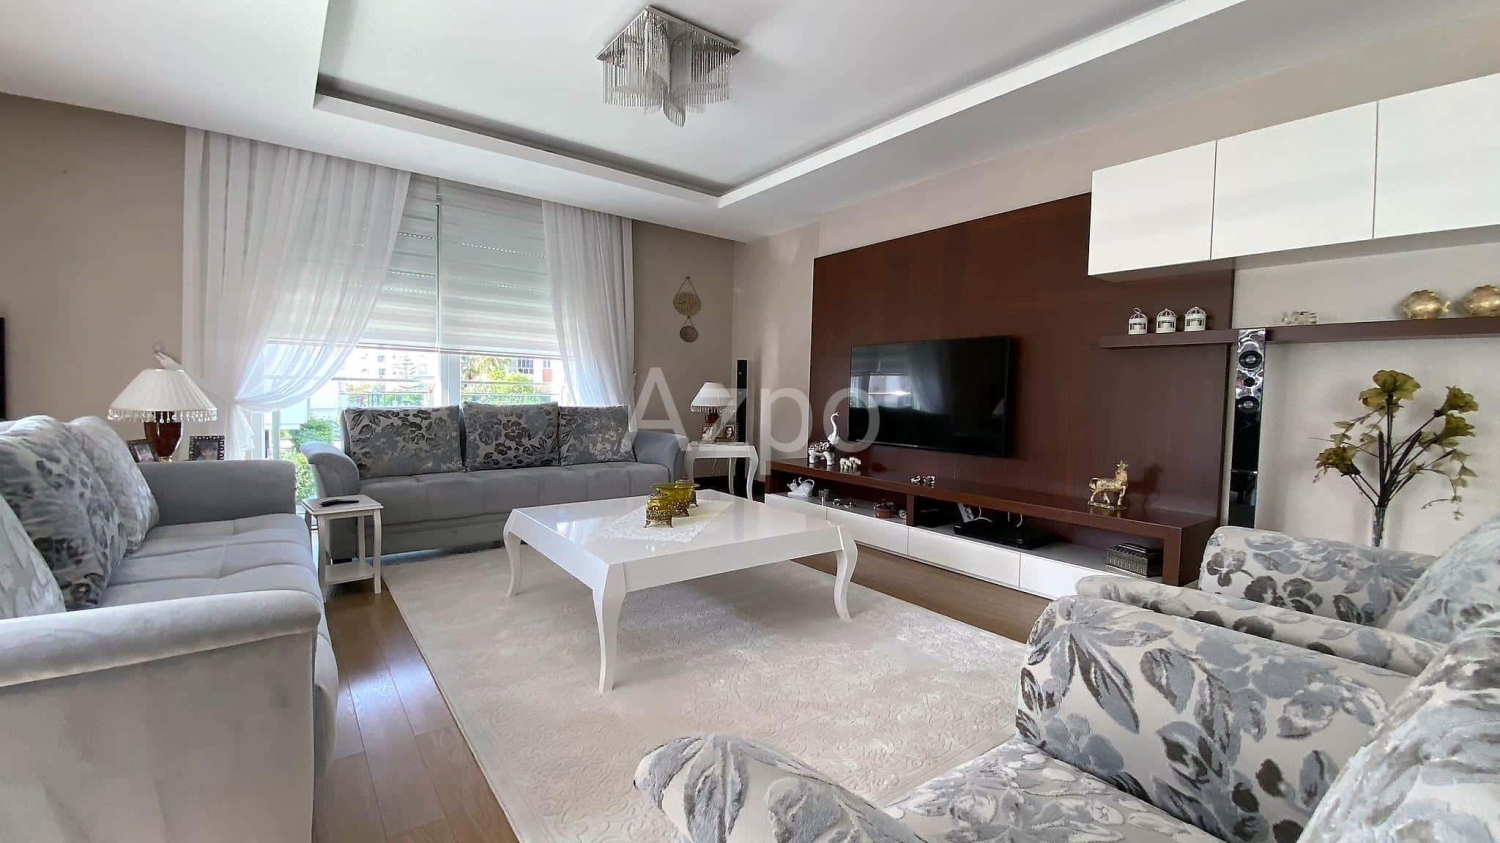 Квартира 3+1 в Анталии, Турция, 155 м² - фото 2